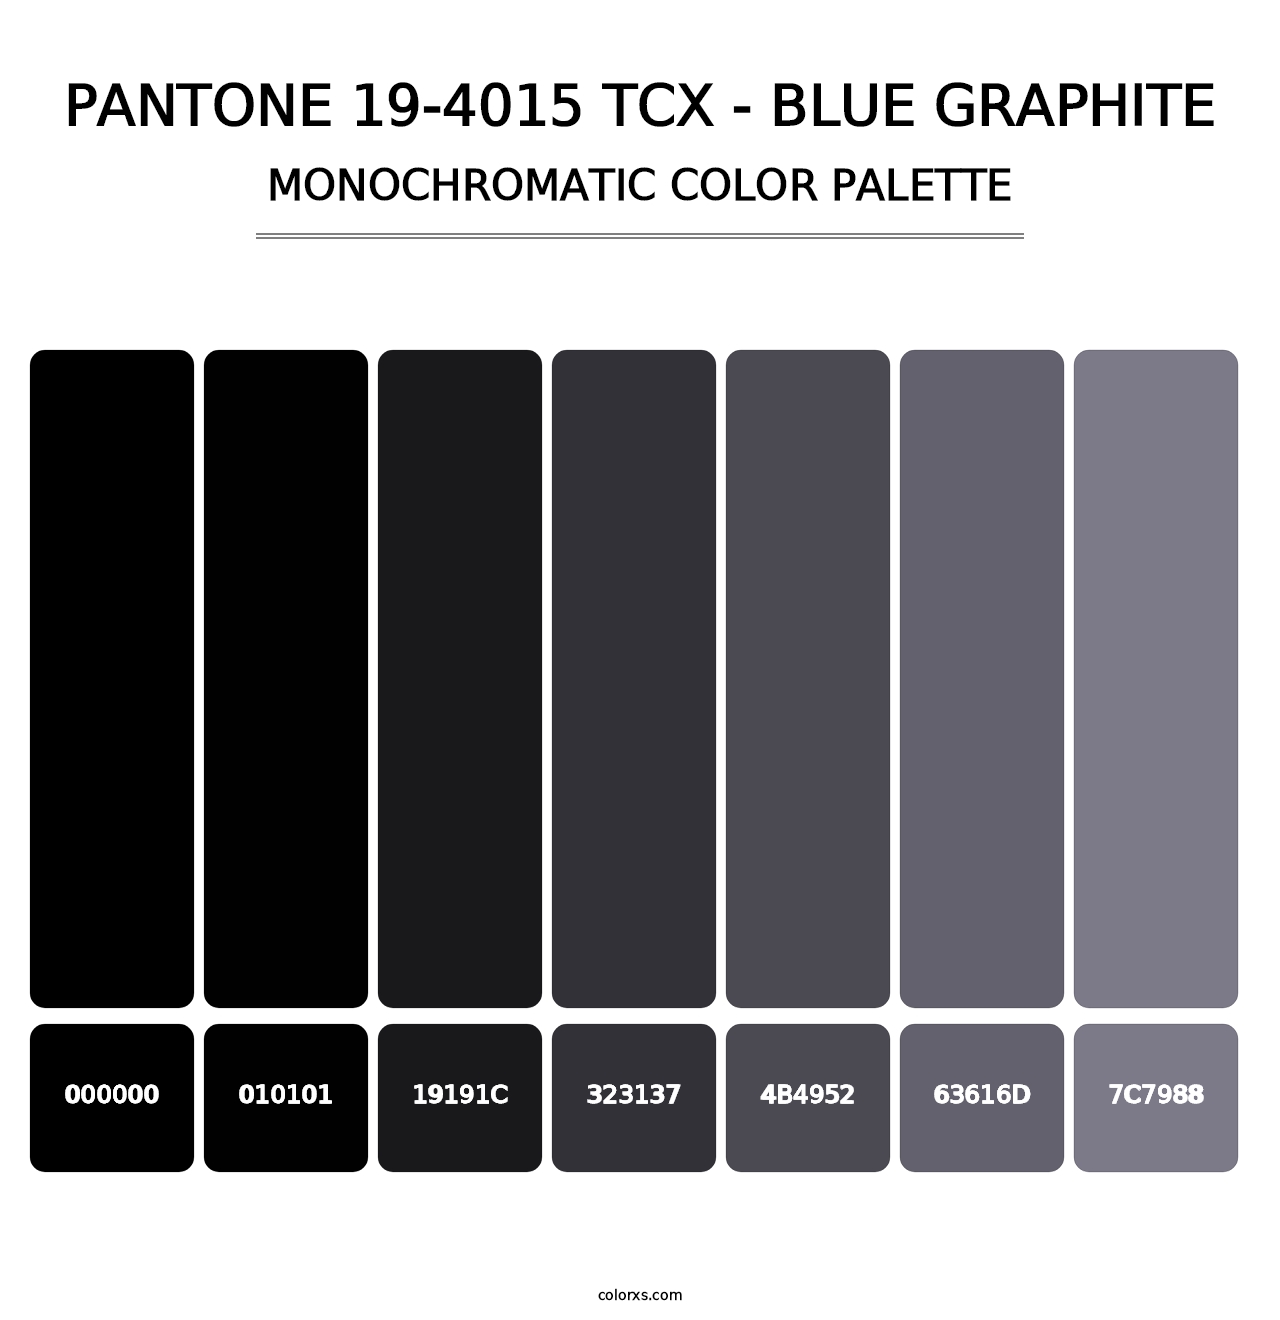 PANTONE 19-4015 TCX - Blue Graphite - Monochromatic Color Palette